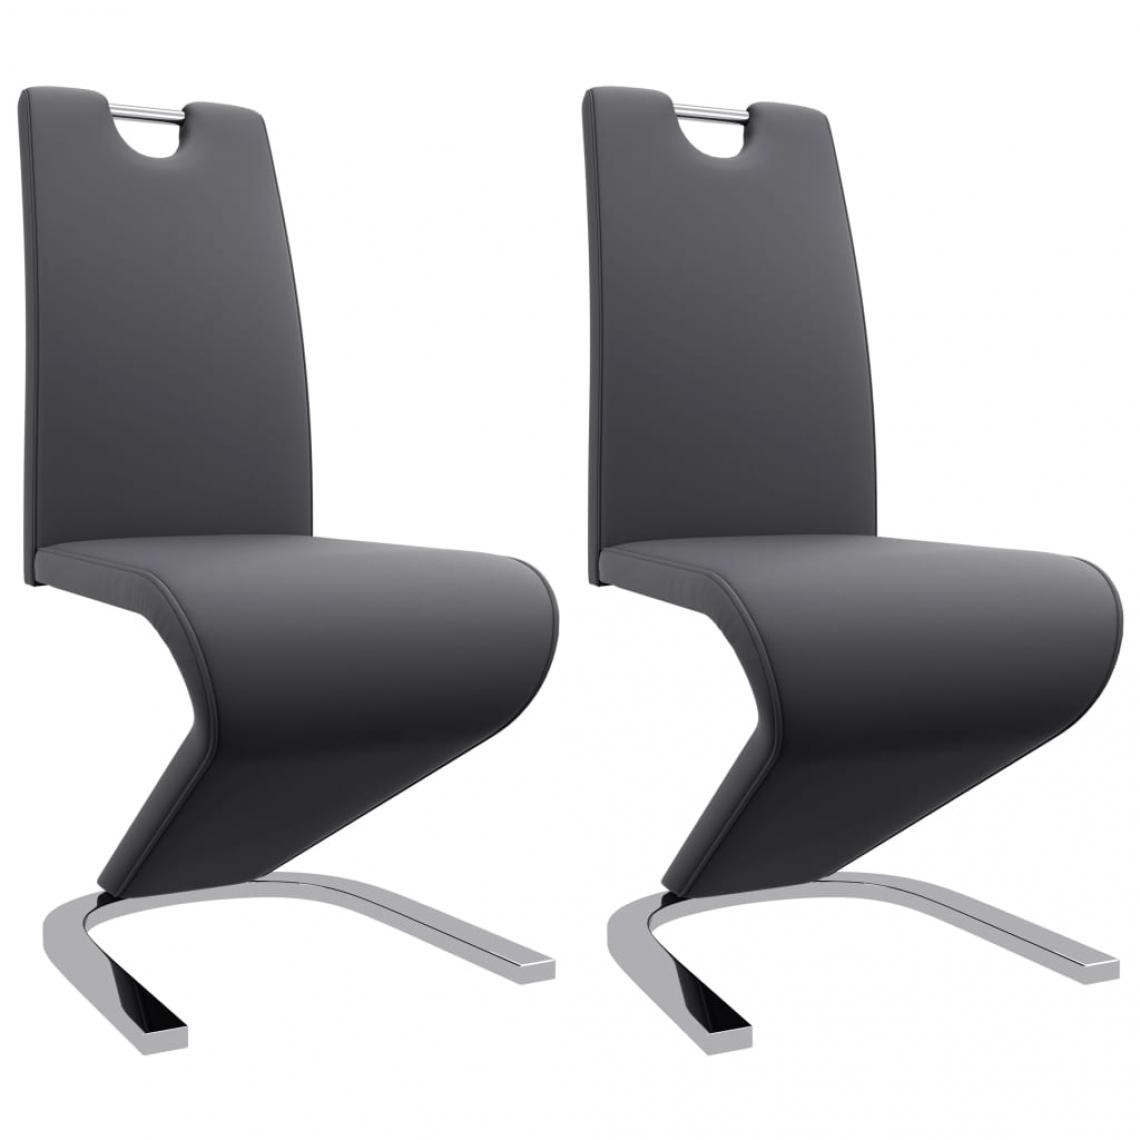 Decoshop26 - Lot de 2 chaises de salle à manger cuisine zigzag style moderne gris similicuir gris CDS021156 - Chaises